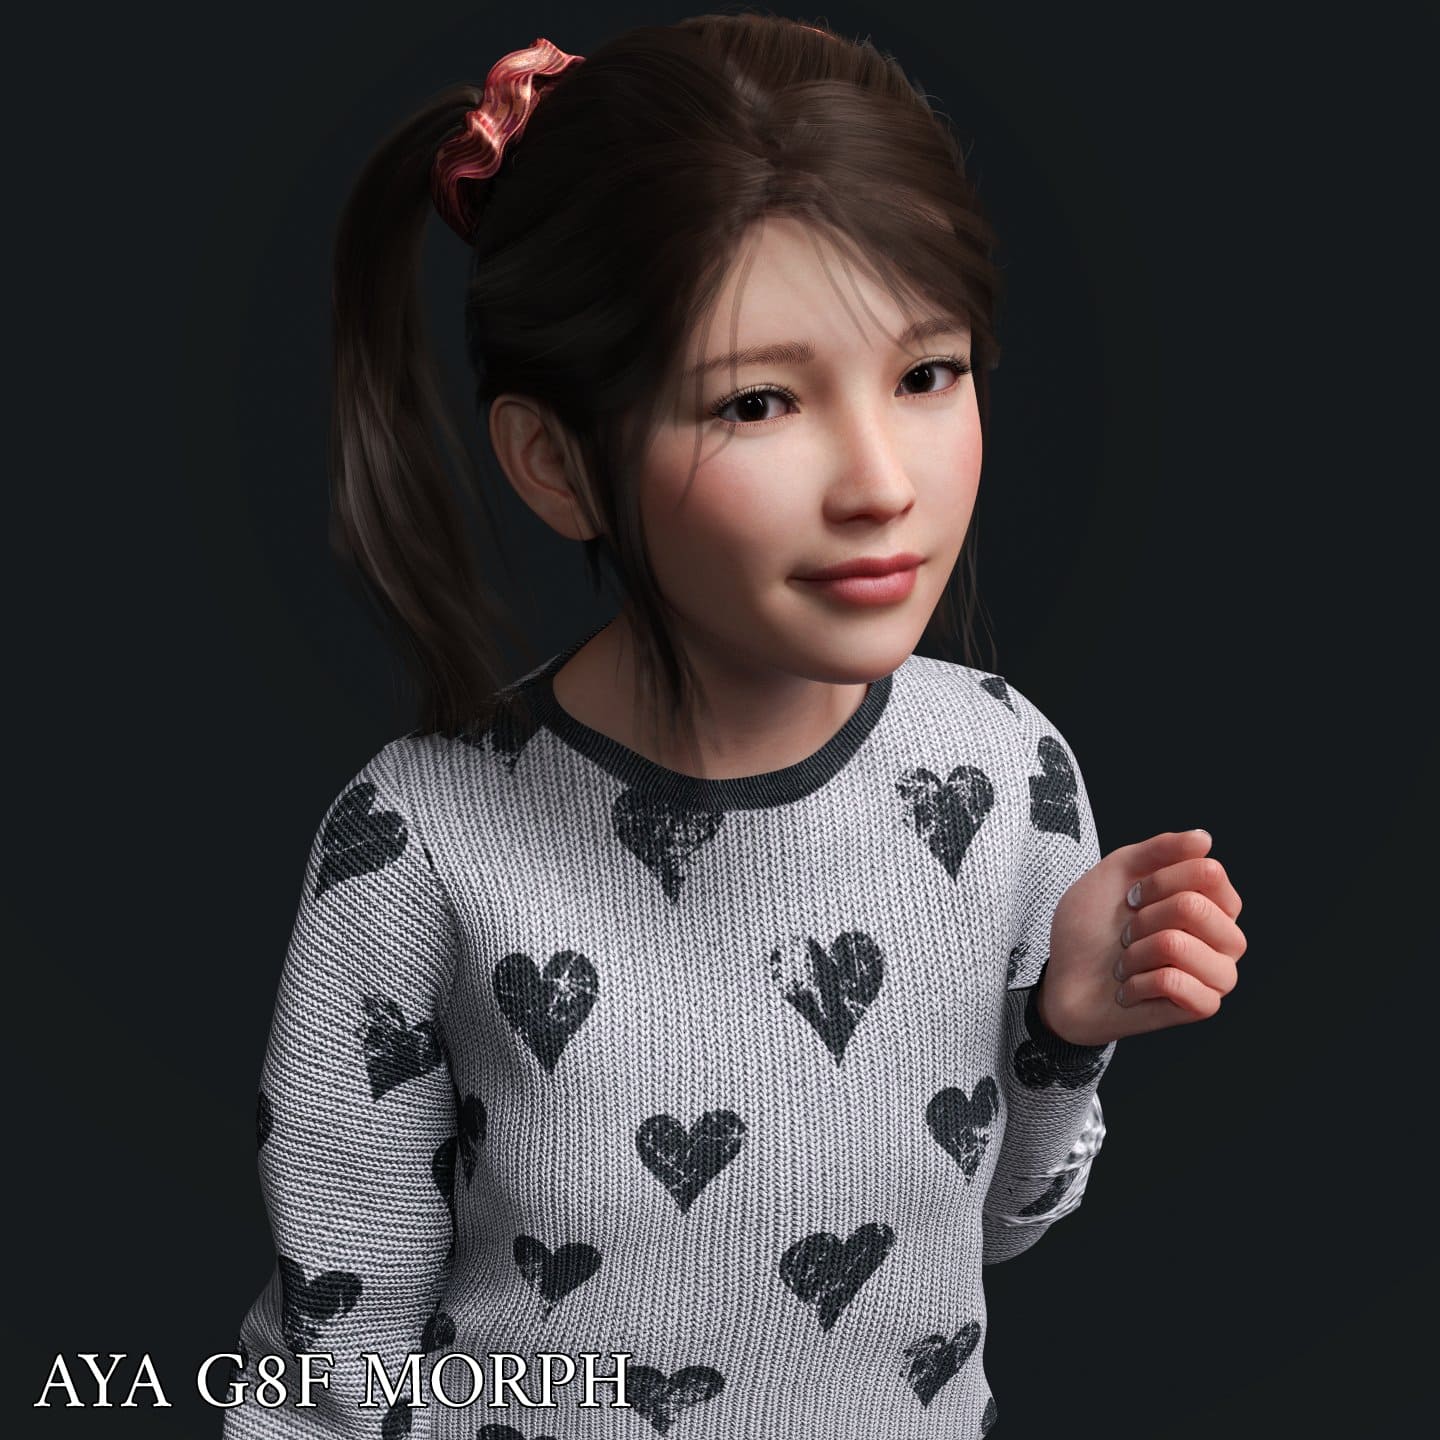 Aya Character Morph For Genesis 8 Females_DAZ3D下载站